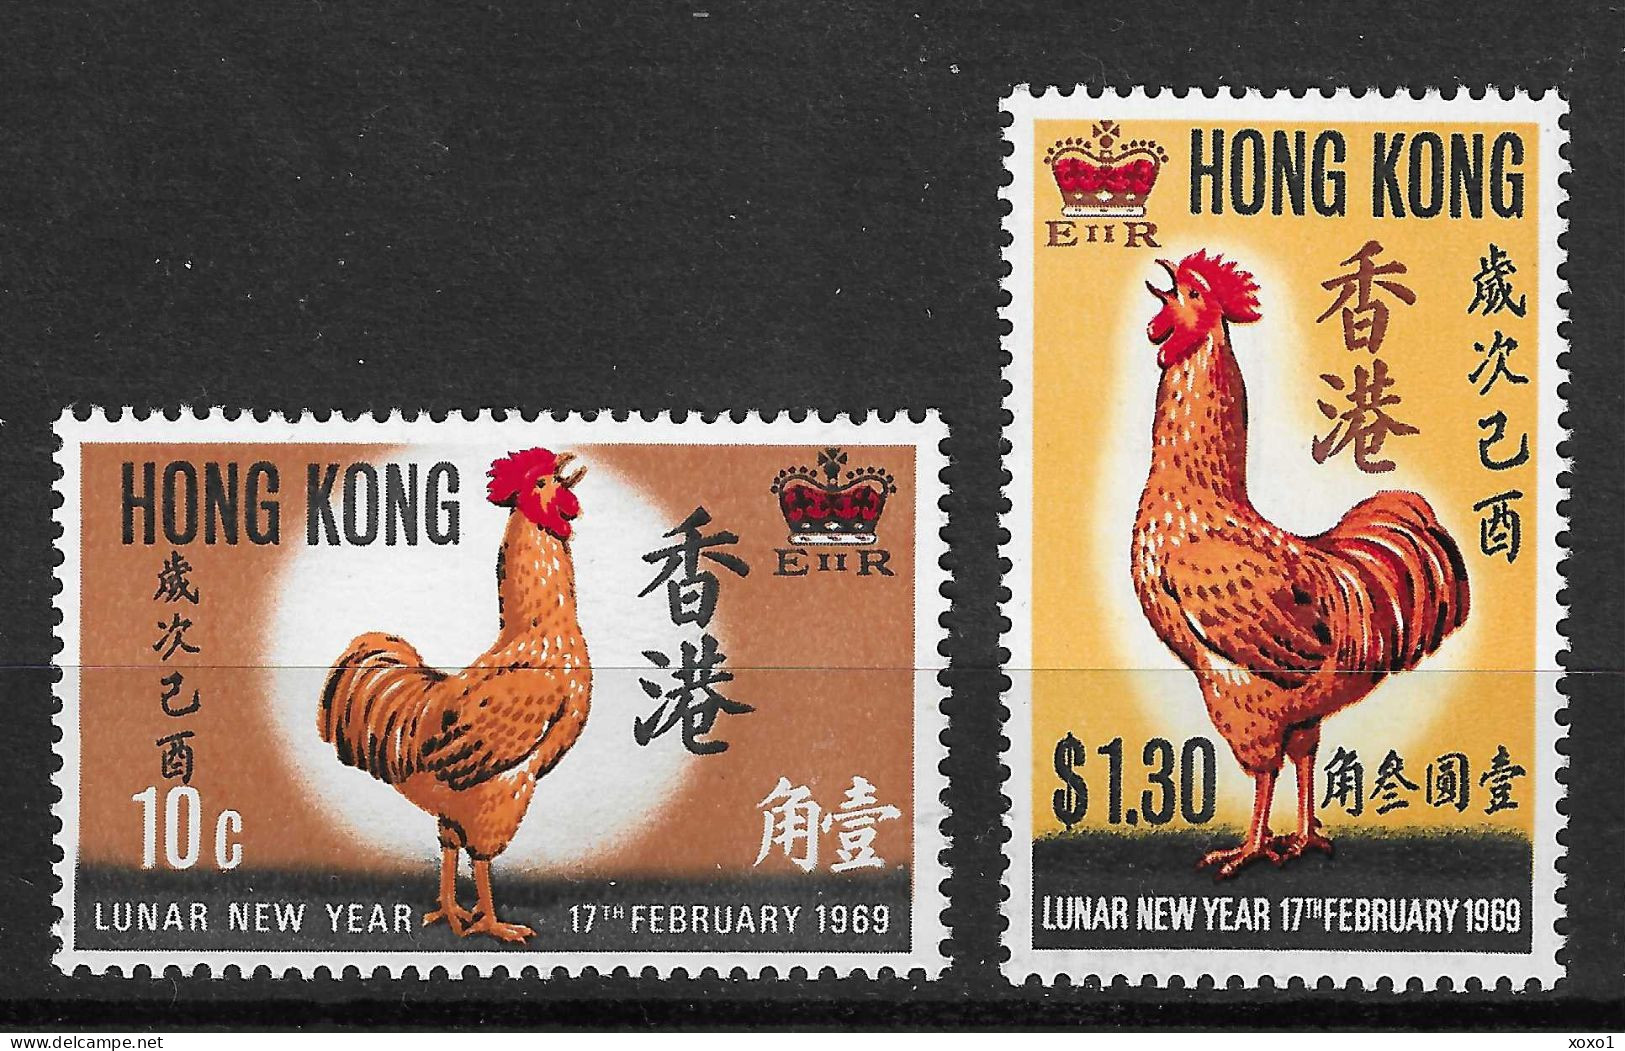 Hong Kong 1969 MiNr. 242 - 243 Hongkong Chinese New Year Of The Rooster  2v MNH** 95,00 € - Chines. Neujahr